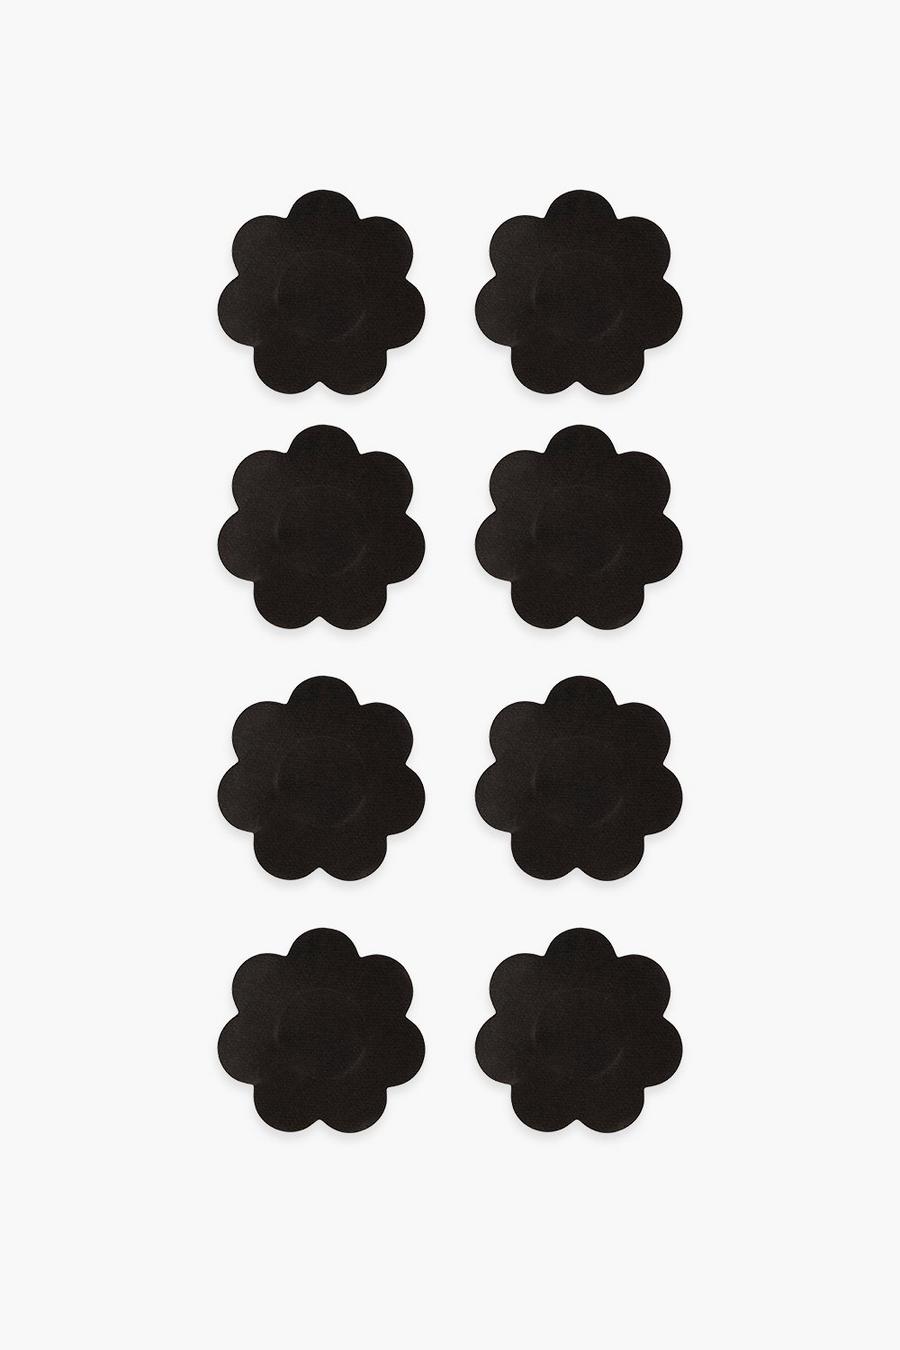 כיסויי פטמות שחורים מסאטן של Brushworks – 4 זוגות